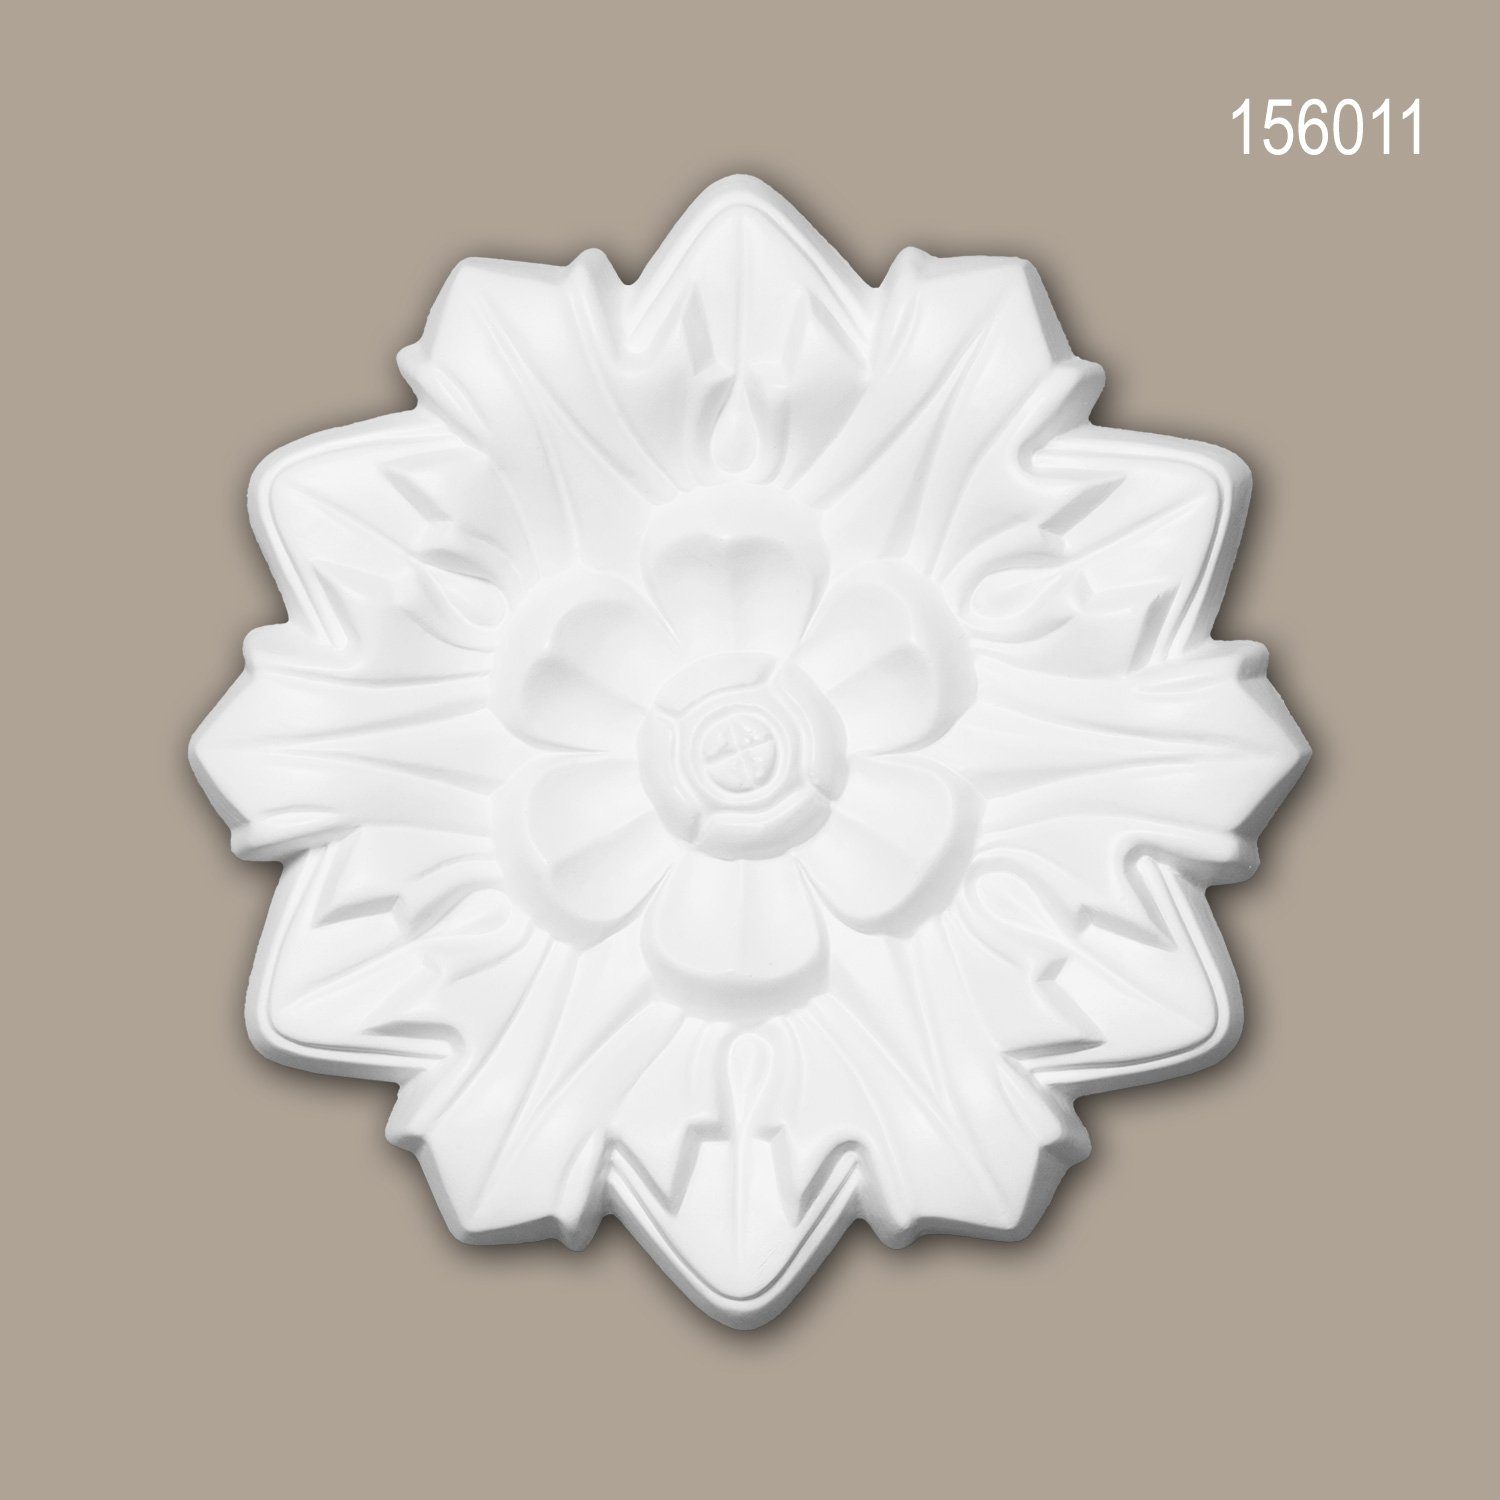 Profhome Decken-Rosette 156011 (Rosette, 1 St., Deckenrosette, Medallion, Stuckrosette, Deckenelement, Zierelement, Durchmesser 19,8 cm), weiß, vorgrundiert, Stil: Neo-Renaissance